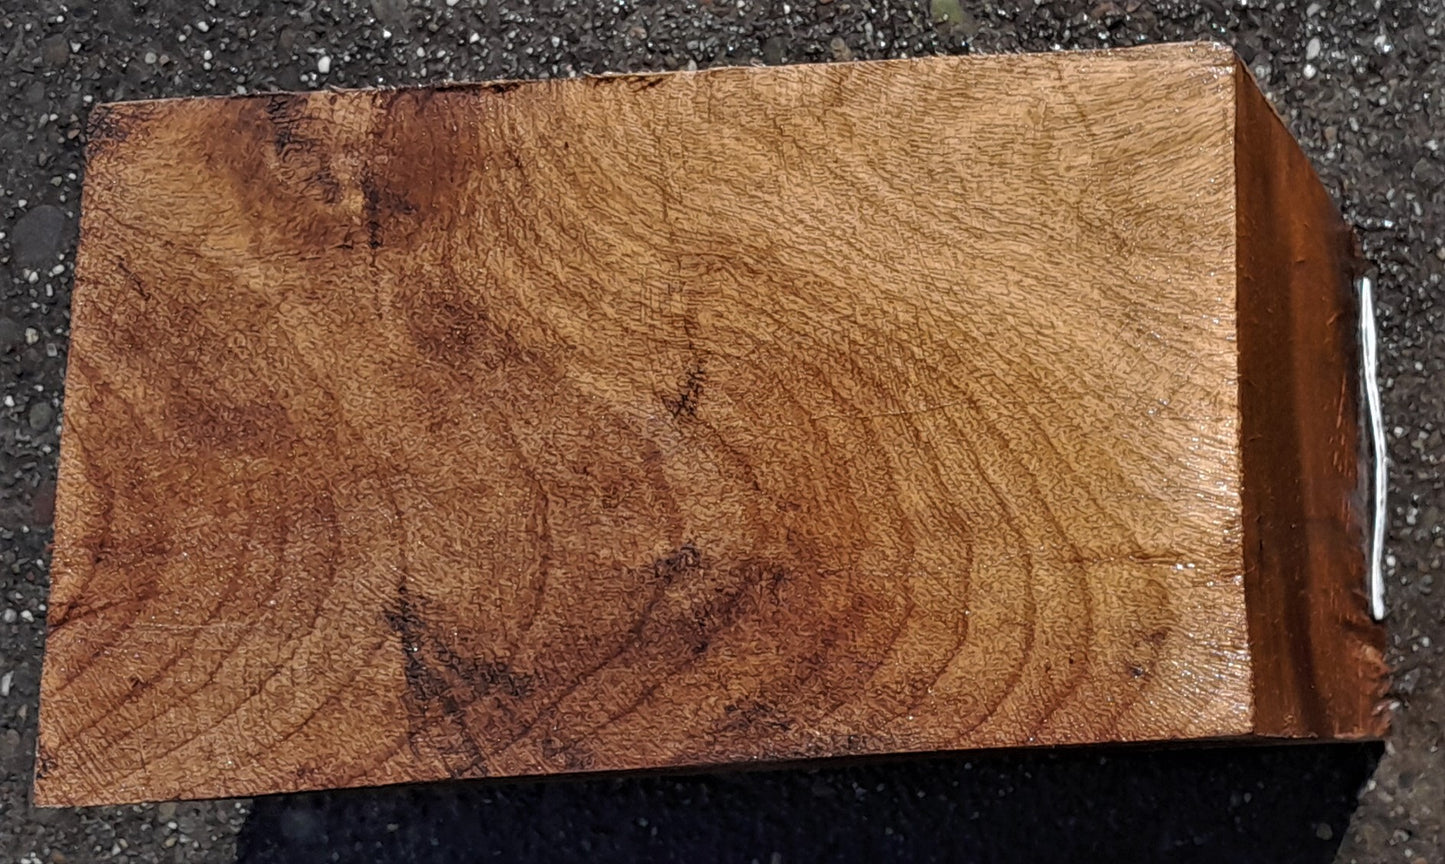 Myrtle wood | Redwood burl | wood turning | DIY wood crafts | bl5012